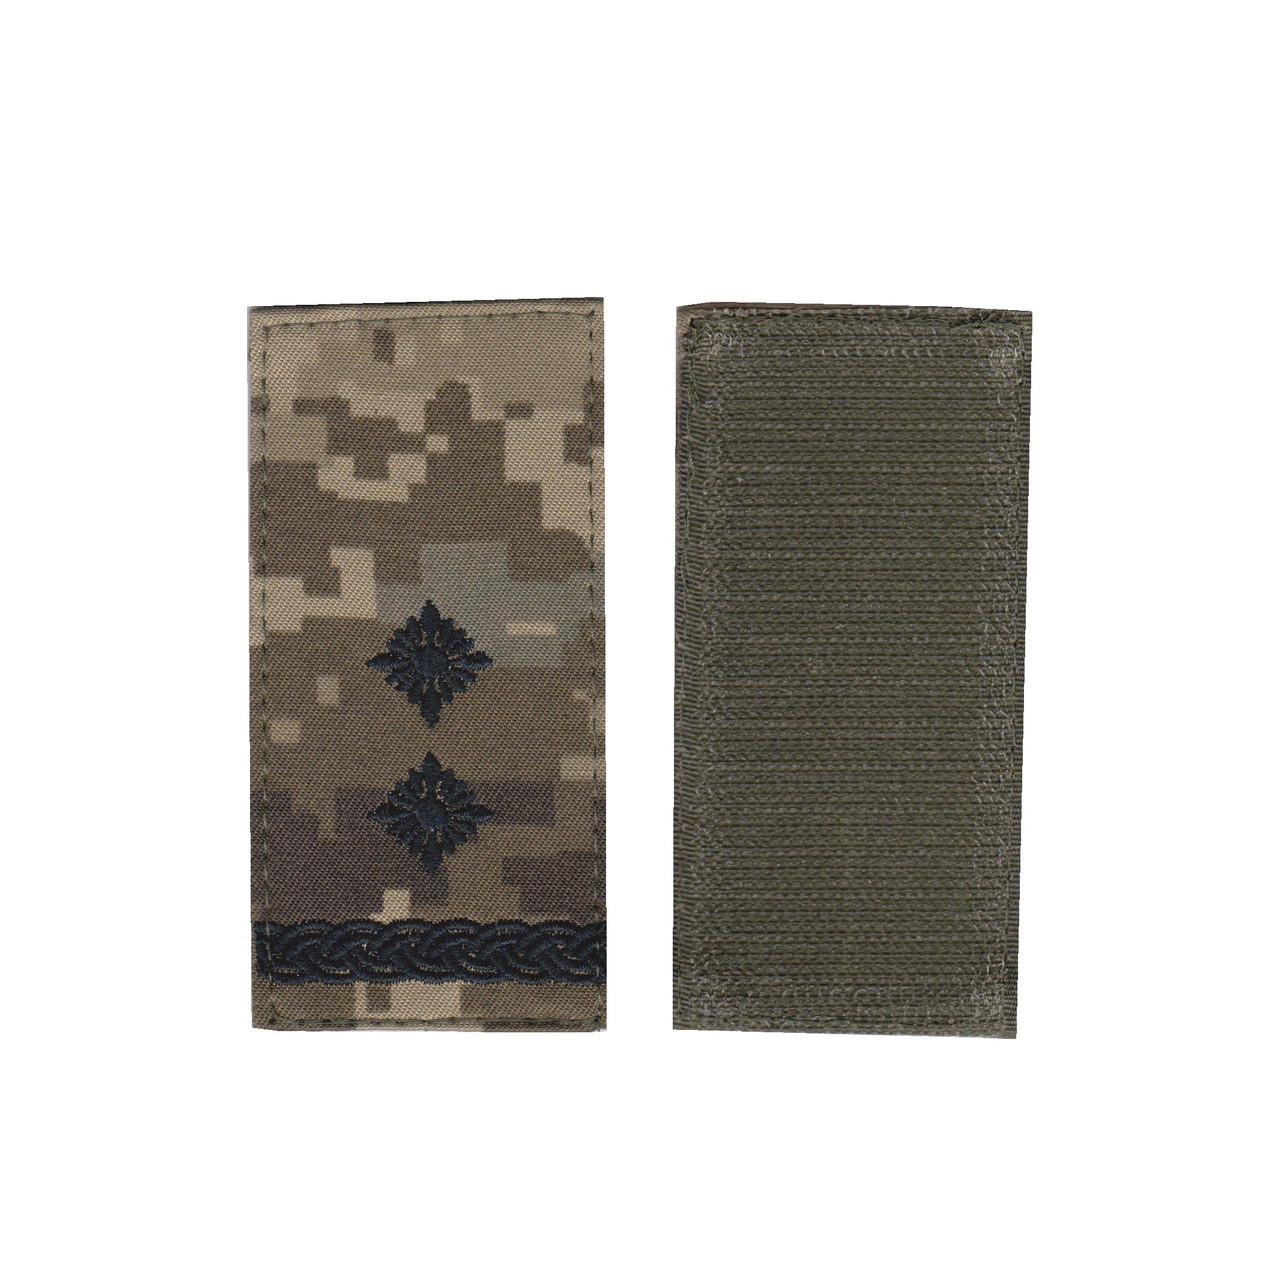 Погон підполковник військовий / армійський шеврон ЗСУ, чорний колір на пікселі. 10 см * 5 см